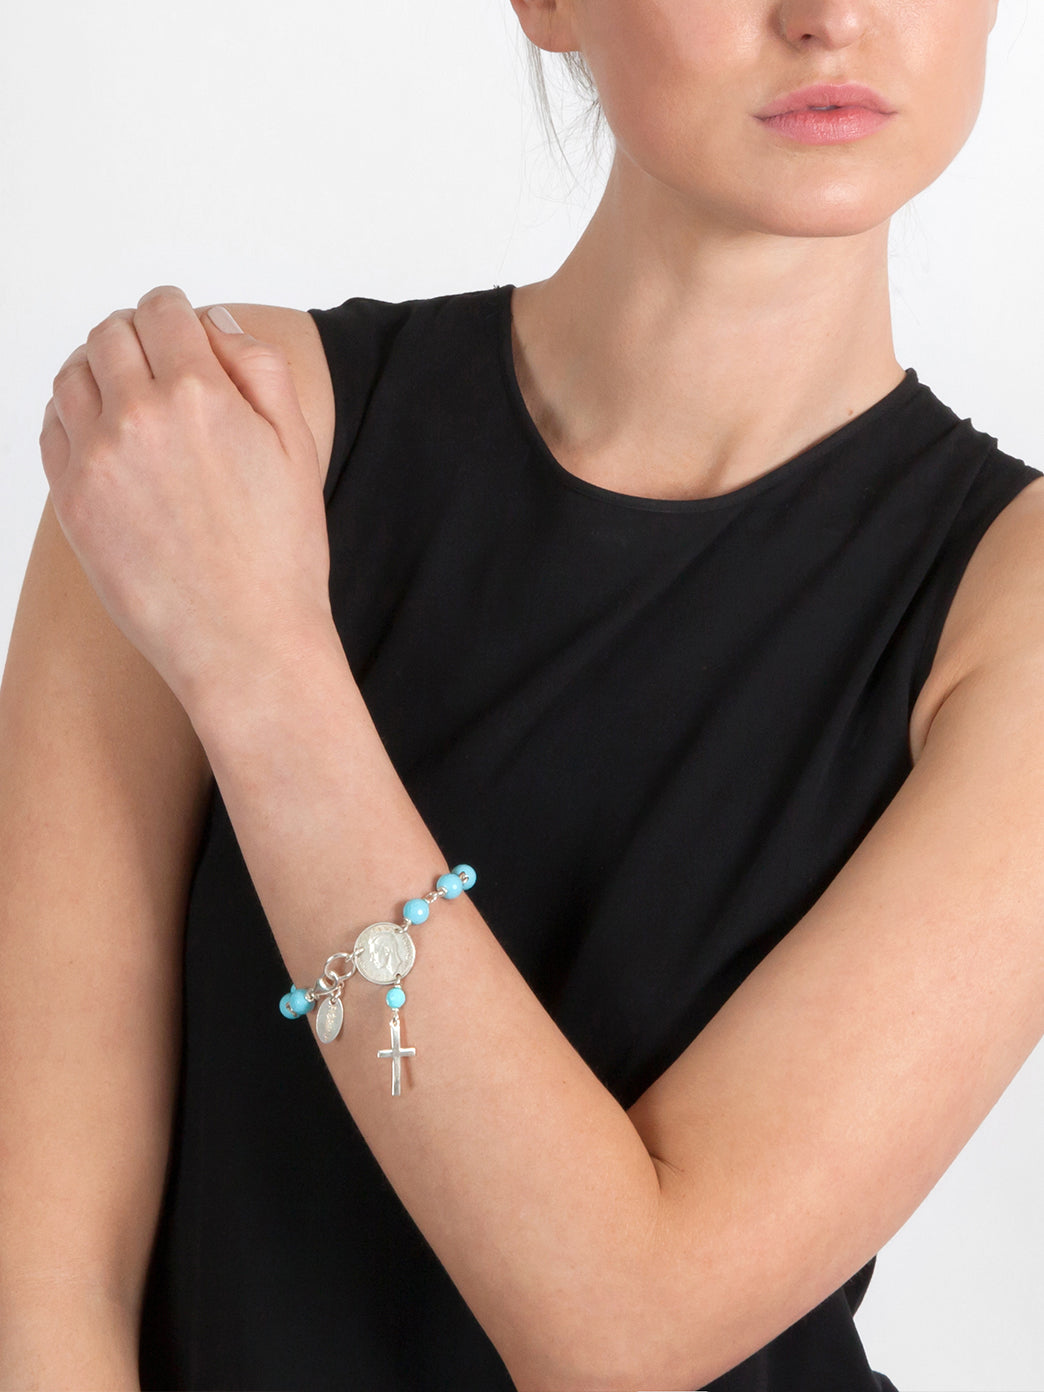 Catholic Rosary Bracelet – Simply Stated